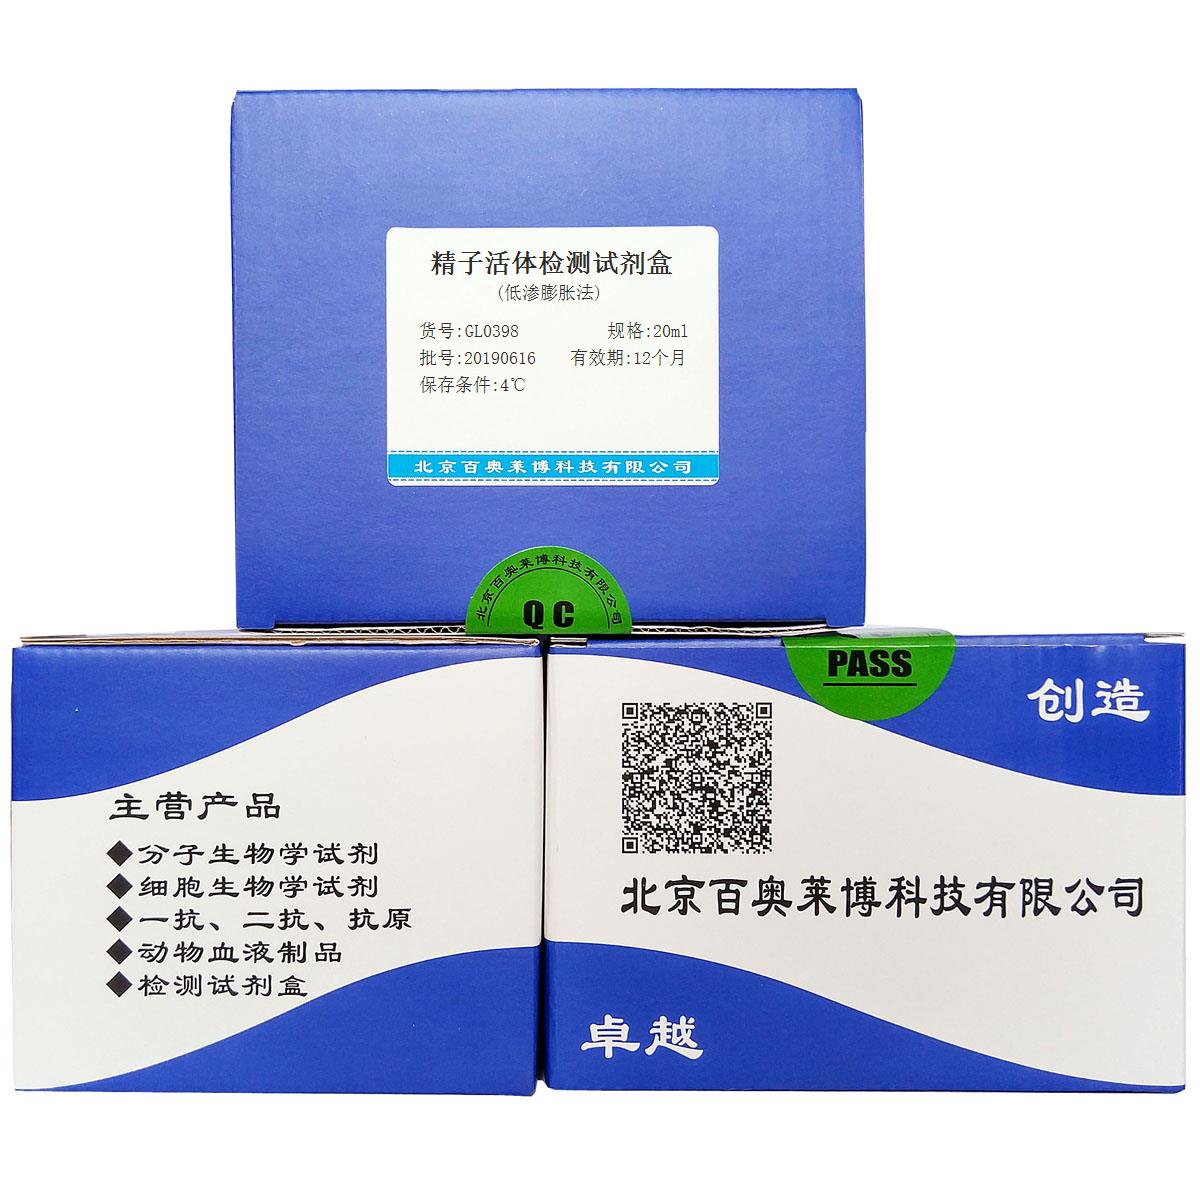 精子活体检测试剂盒(低渗膨胀法)北京厂家